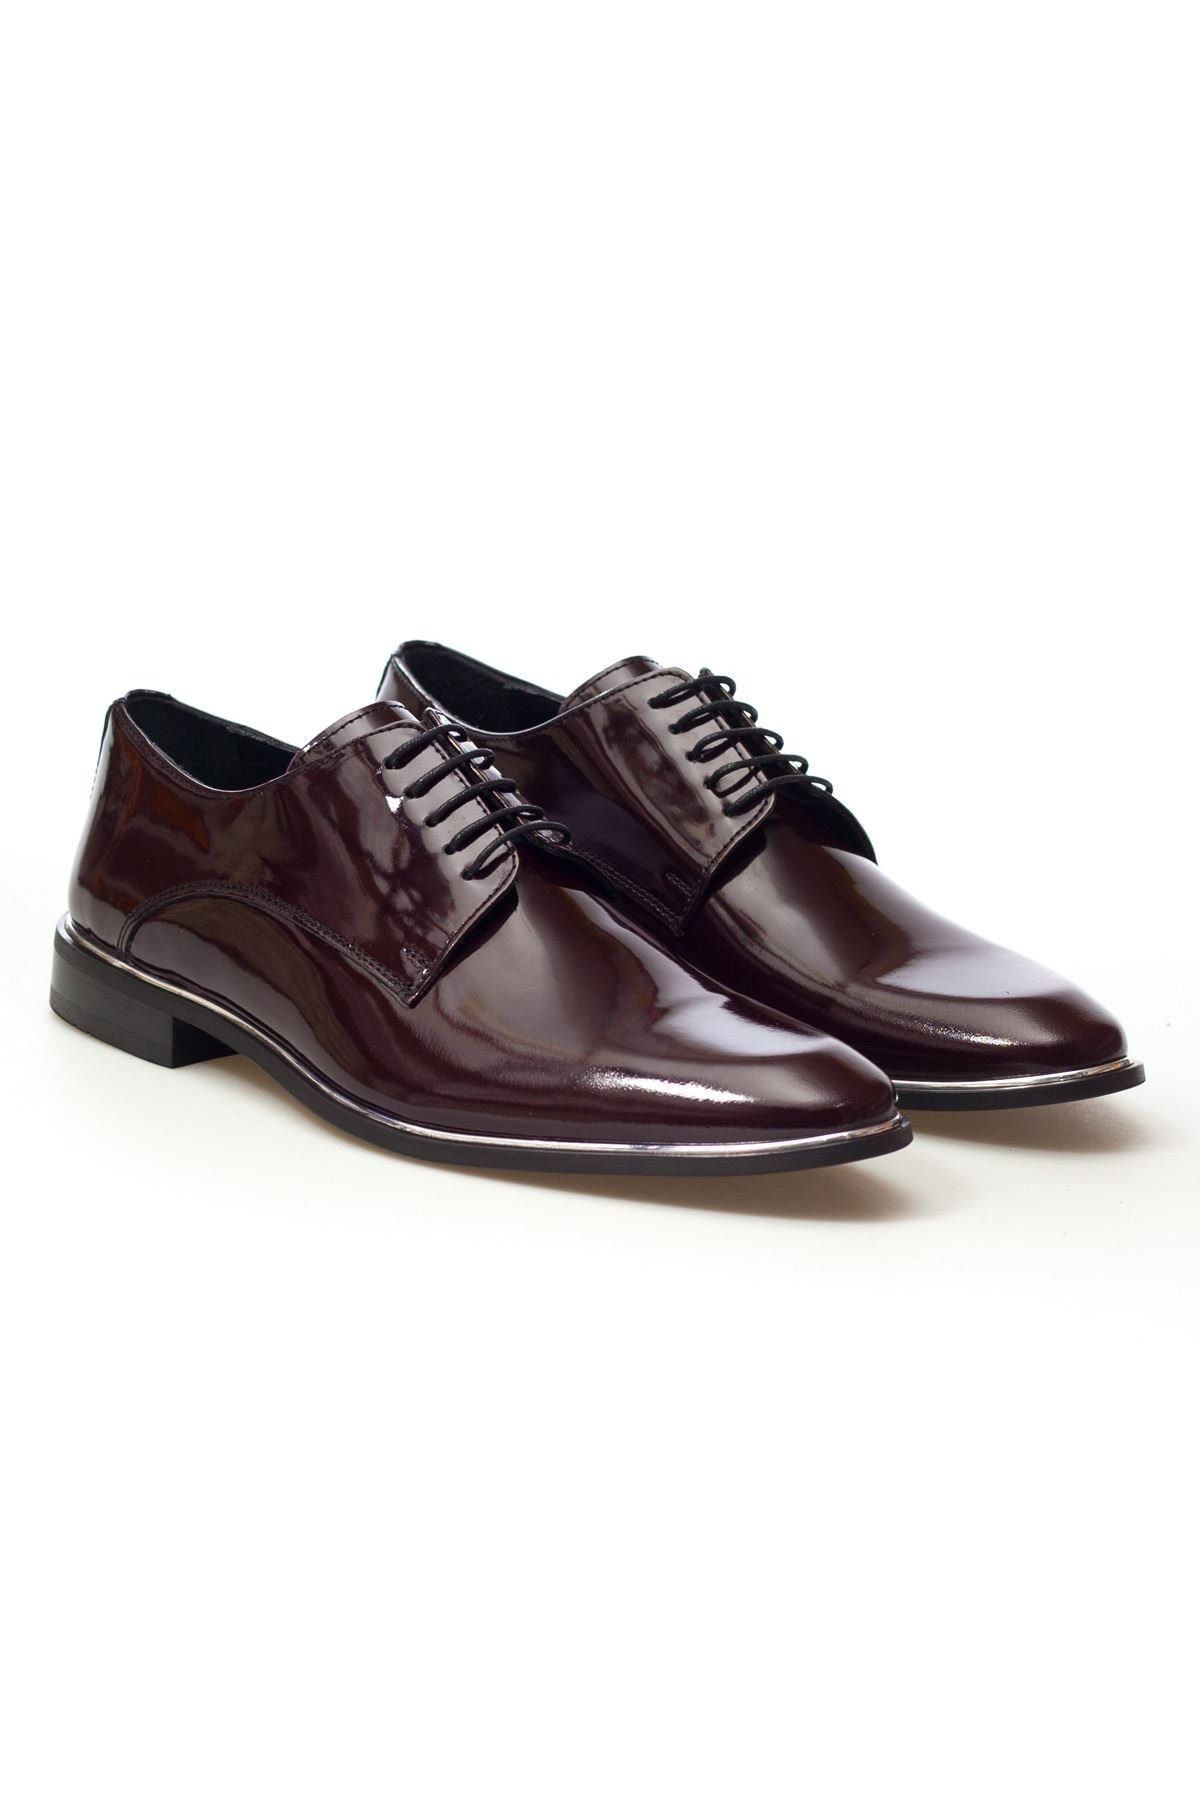 MARCOMEN Bordo Rugan Metal Detay Hakiki Deri Bağcıklı Erkek Klasik Ayakkabı • A20eymcm0027